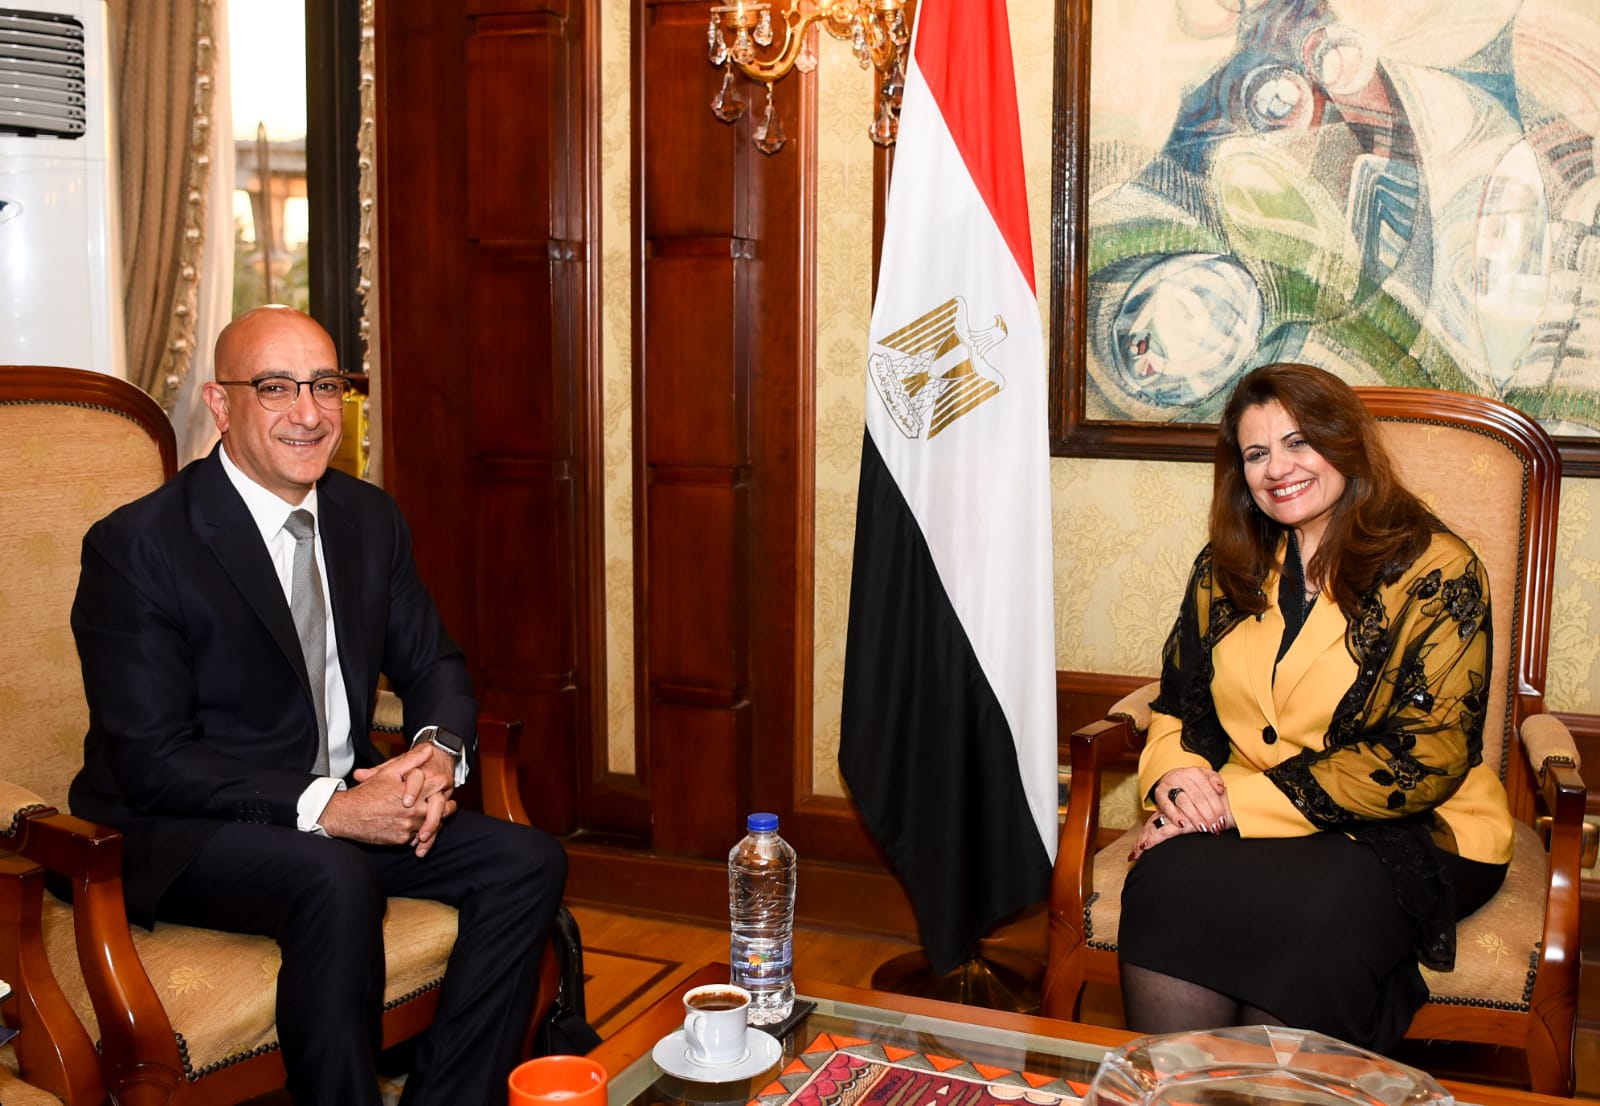 وزيرة الهجرة تستقبل مستثمرا مصريا بارزا بأمريكا لبحث الاستثمار في مصر وتوفير فرص عمل للشباب